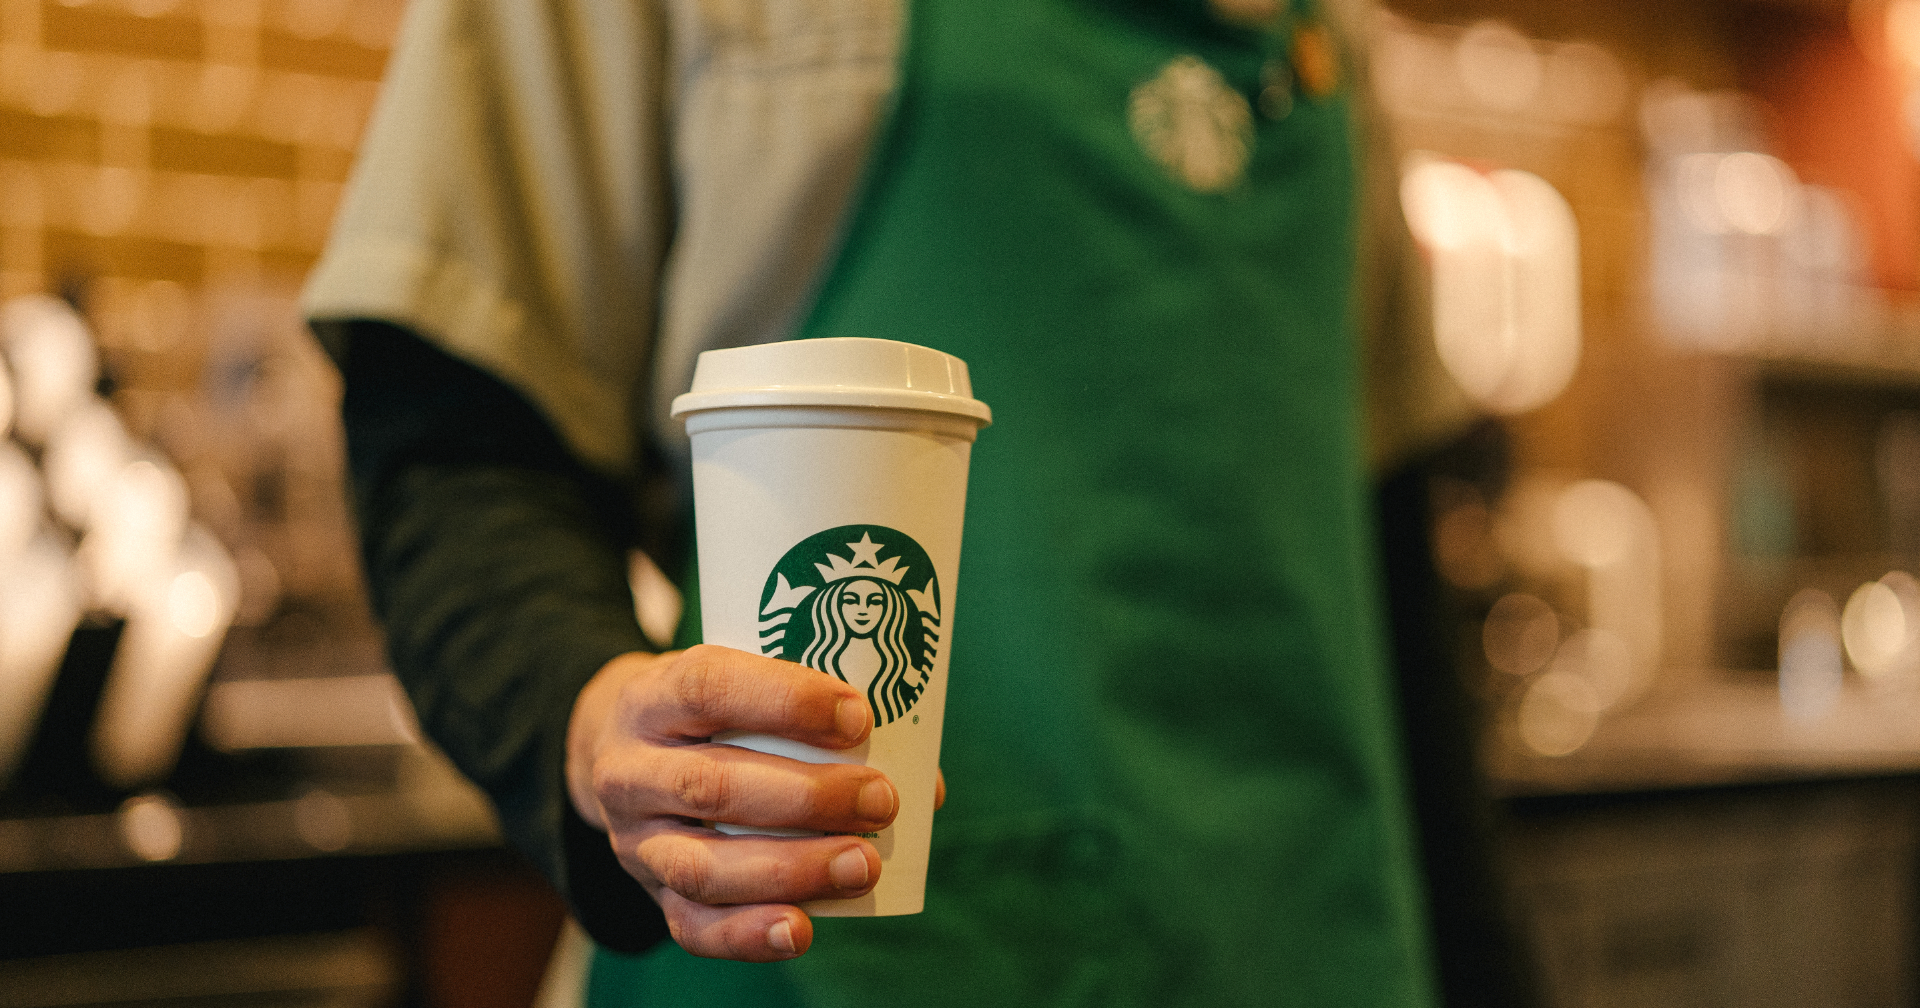 พนักงาน Starbucks เตรียมหยุดงานประท้วง หลังถูกห้ามตกแต่งร้านฉลอง Pride Month